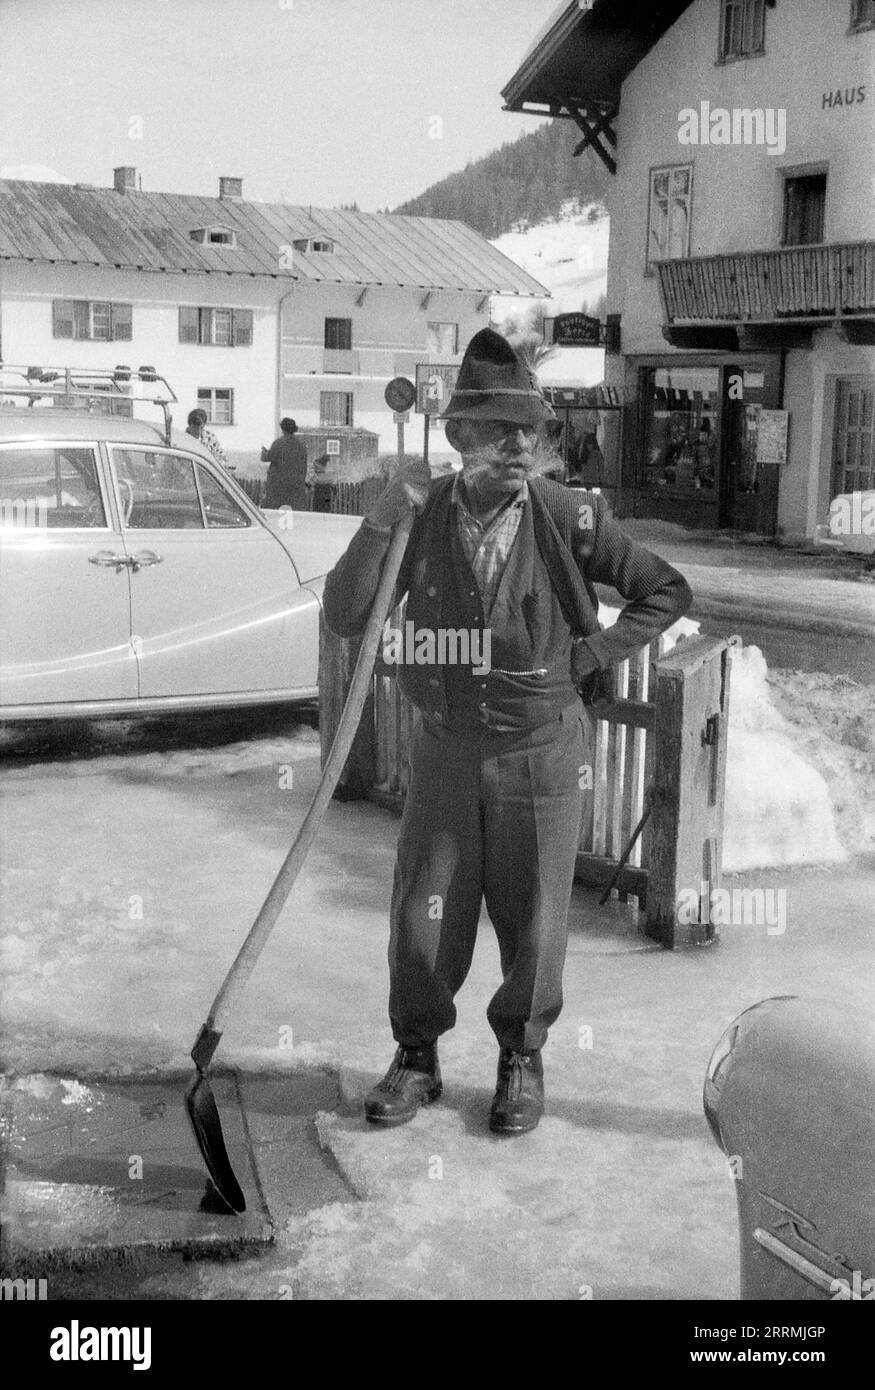 Tirol, Österreich. c.1960 – St. Anton am Arlberg. Ein älterer Mann mit einem buschigen Hammelbart und einem traditionellen Tiroler Hut steht mit einer langgezogenen Schaufel, mit der er Schnee vom Pflaster entfernt. Hotels und die schneebedeckten Berge der Ostalpen sind in der Ferne sichtbar. Stockfoto